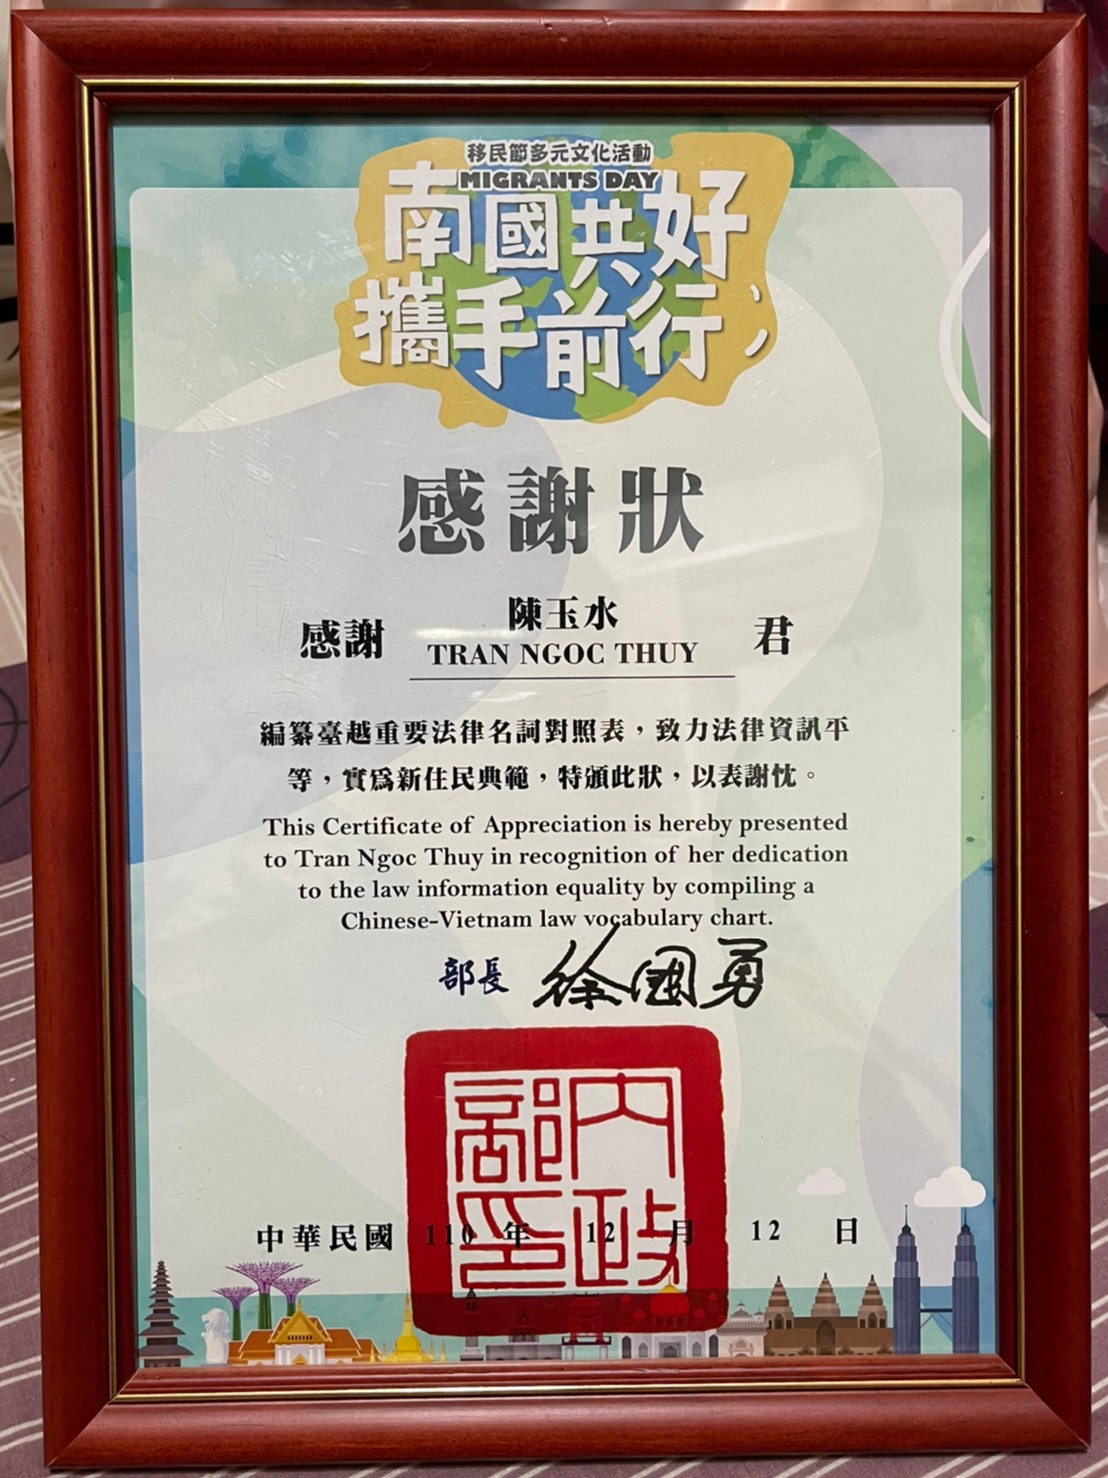 ได้รับเหรียญผู้ตั้งถิ่นฐานใหม่ดีเด่นในวันผู้อพยพปี 2021 (ภาพ / จาก Trần Ngọc Thùy)